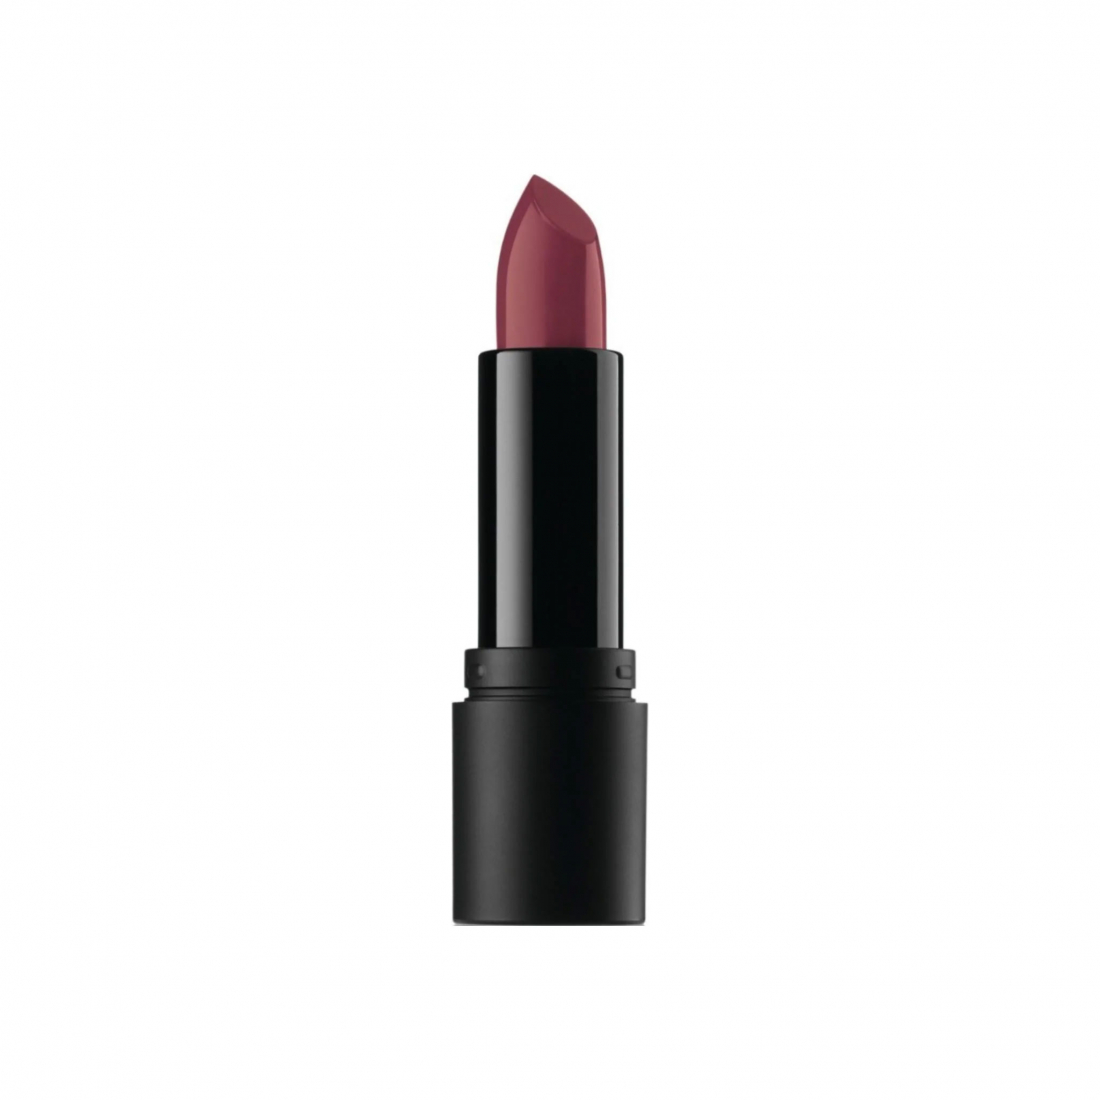 'Statement Luxe-Shine' Lipstick - Nsfw 3.5 g